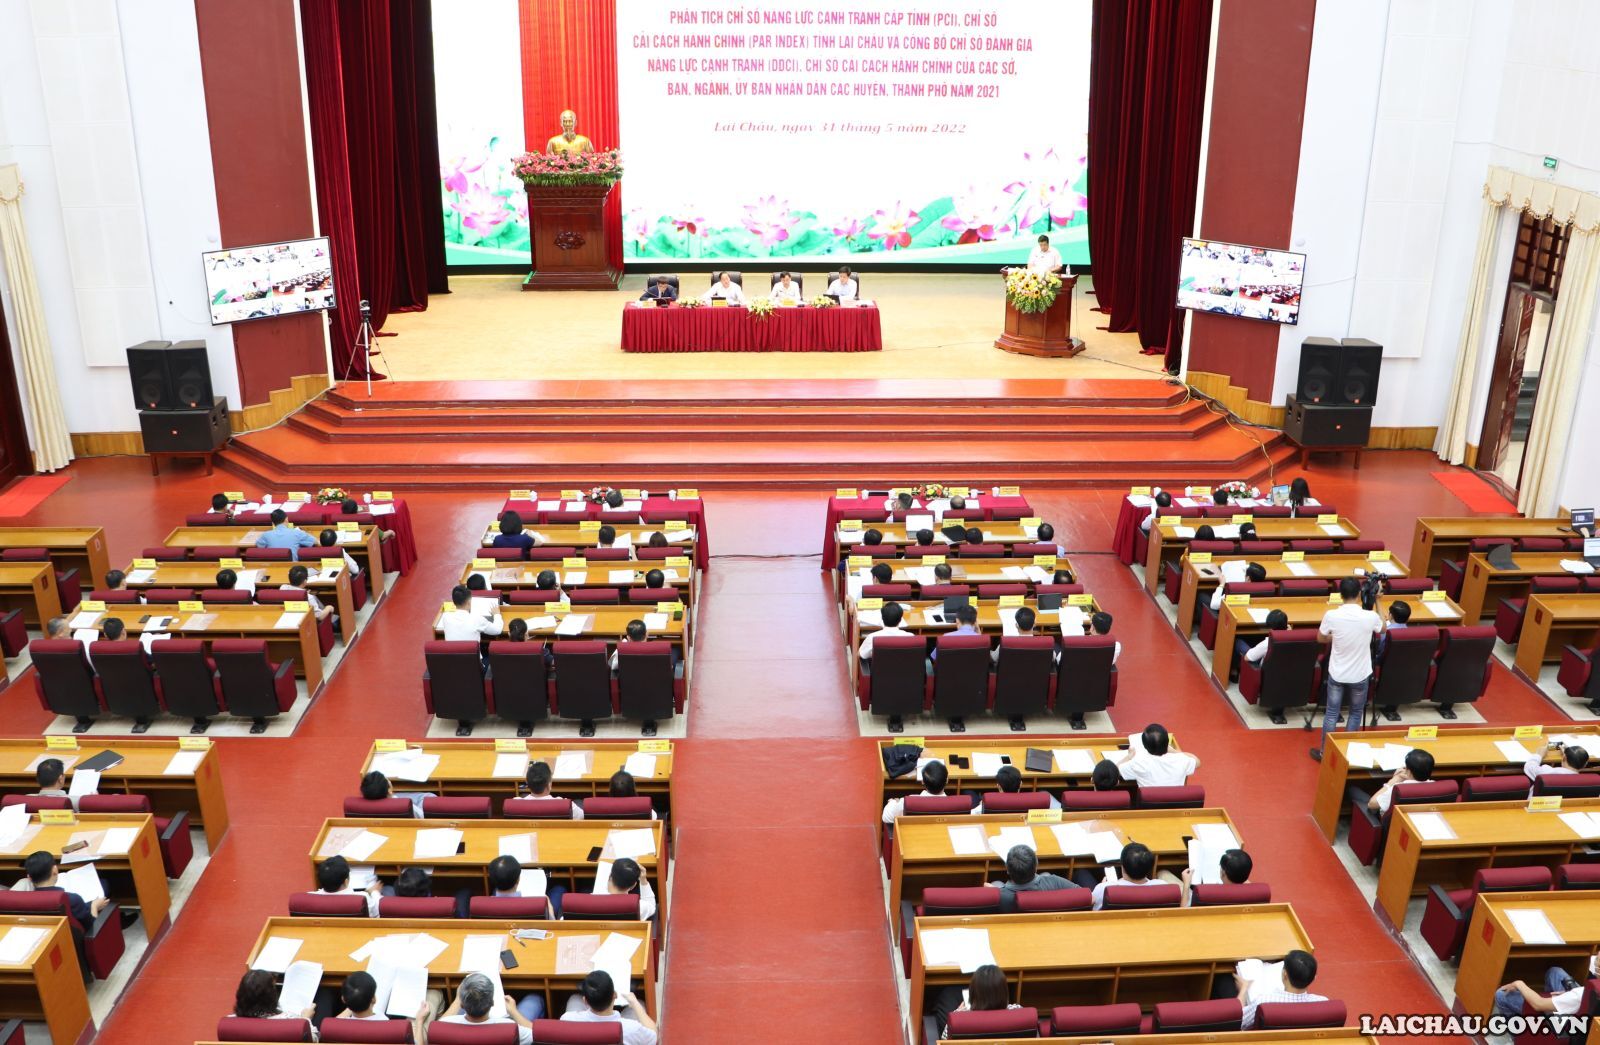 Tọa đàm Phân tích Chỉ số cải cách hành chính của các sở, ban, ngành, UBND các huyện, thành phố tỉnh Lai Châu 